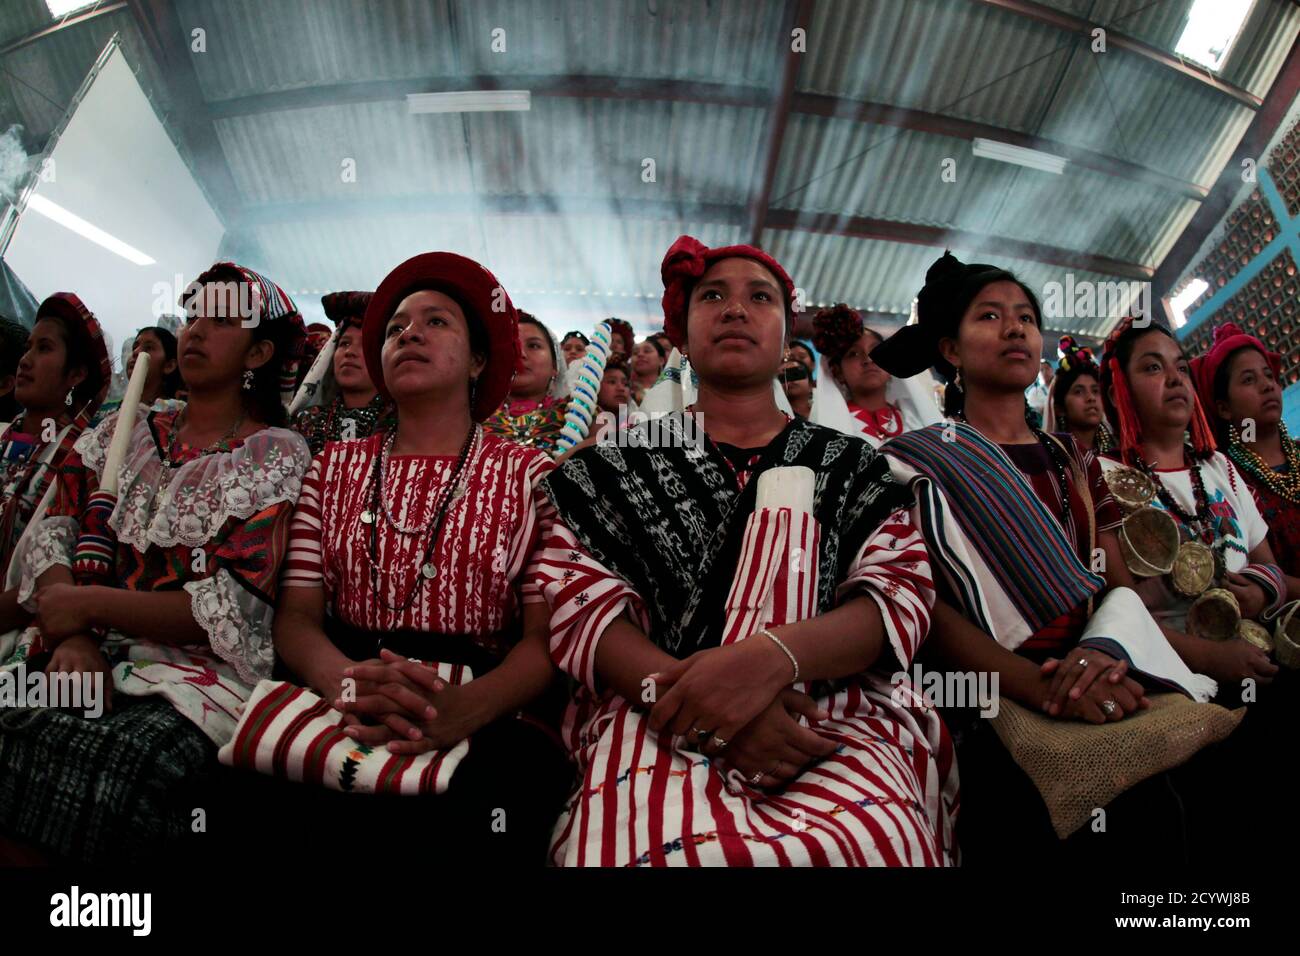 Los participantes asisten al concurso de belleza indígena 'Rabin Ajau' (o 'Risas del Rey' en lengua maya Q?eqchi), un evento para coronar a la reina de belleza indígena del país, en Cobán, a unos 212 km (131 millas) al norte de la ciudad de Guatemala, el 29 de julio de 2012. El concurso, que comenzó en la década de 1960, juzga a los concursantes no solo por sus miradas, sino también por su fluidez en las lenguas indígenas y su conocimiento en las costumbres tradicionales y las presentaciones ceremoniales. Un total de 102 mujeres indígenas de 14 regiones de Guatemala están participando en el evento de este año, según los medios locales. REUTERS/Jorge Dan López ( Foto de stock